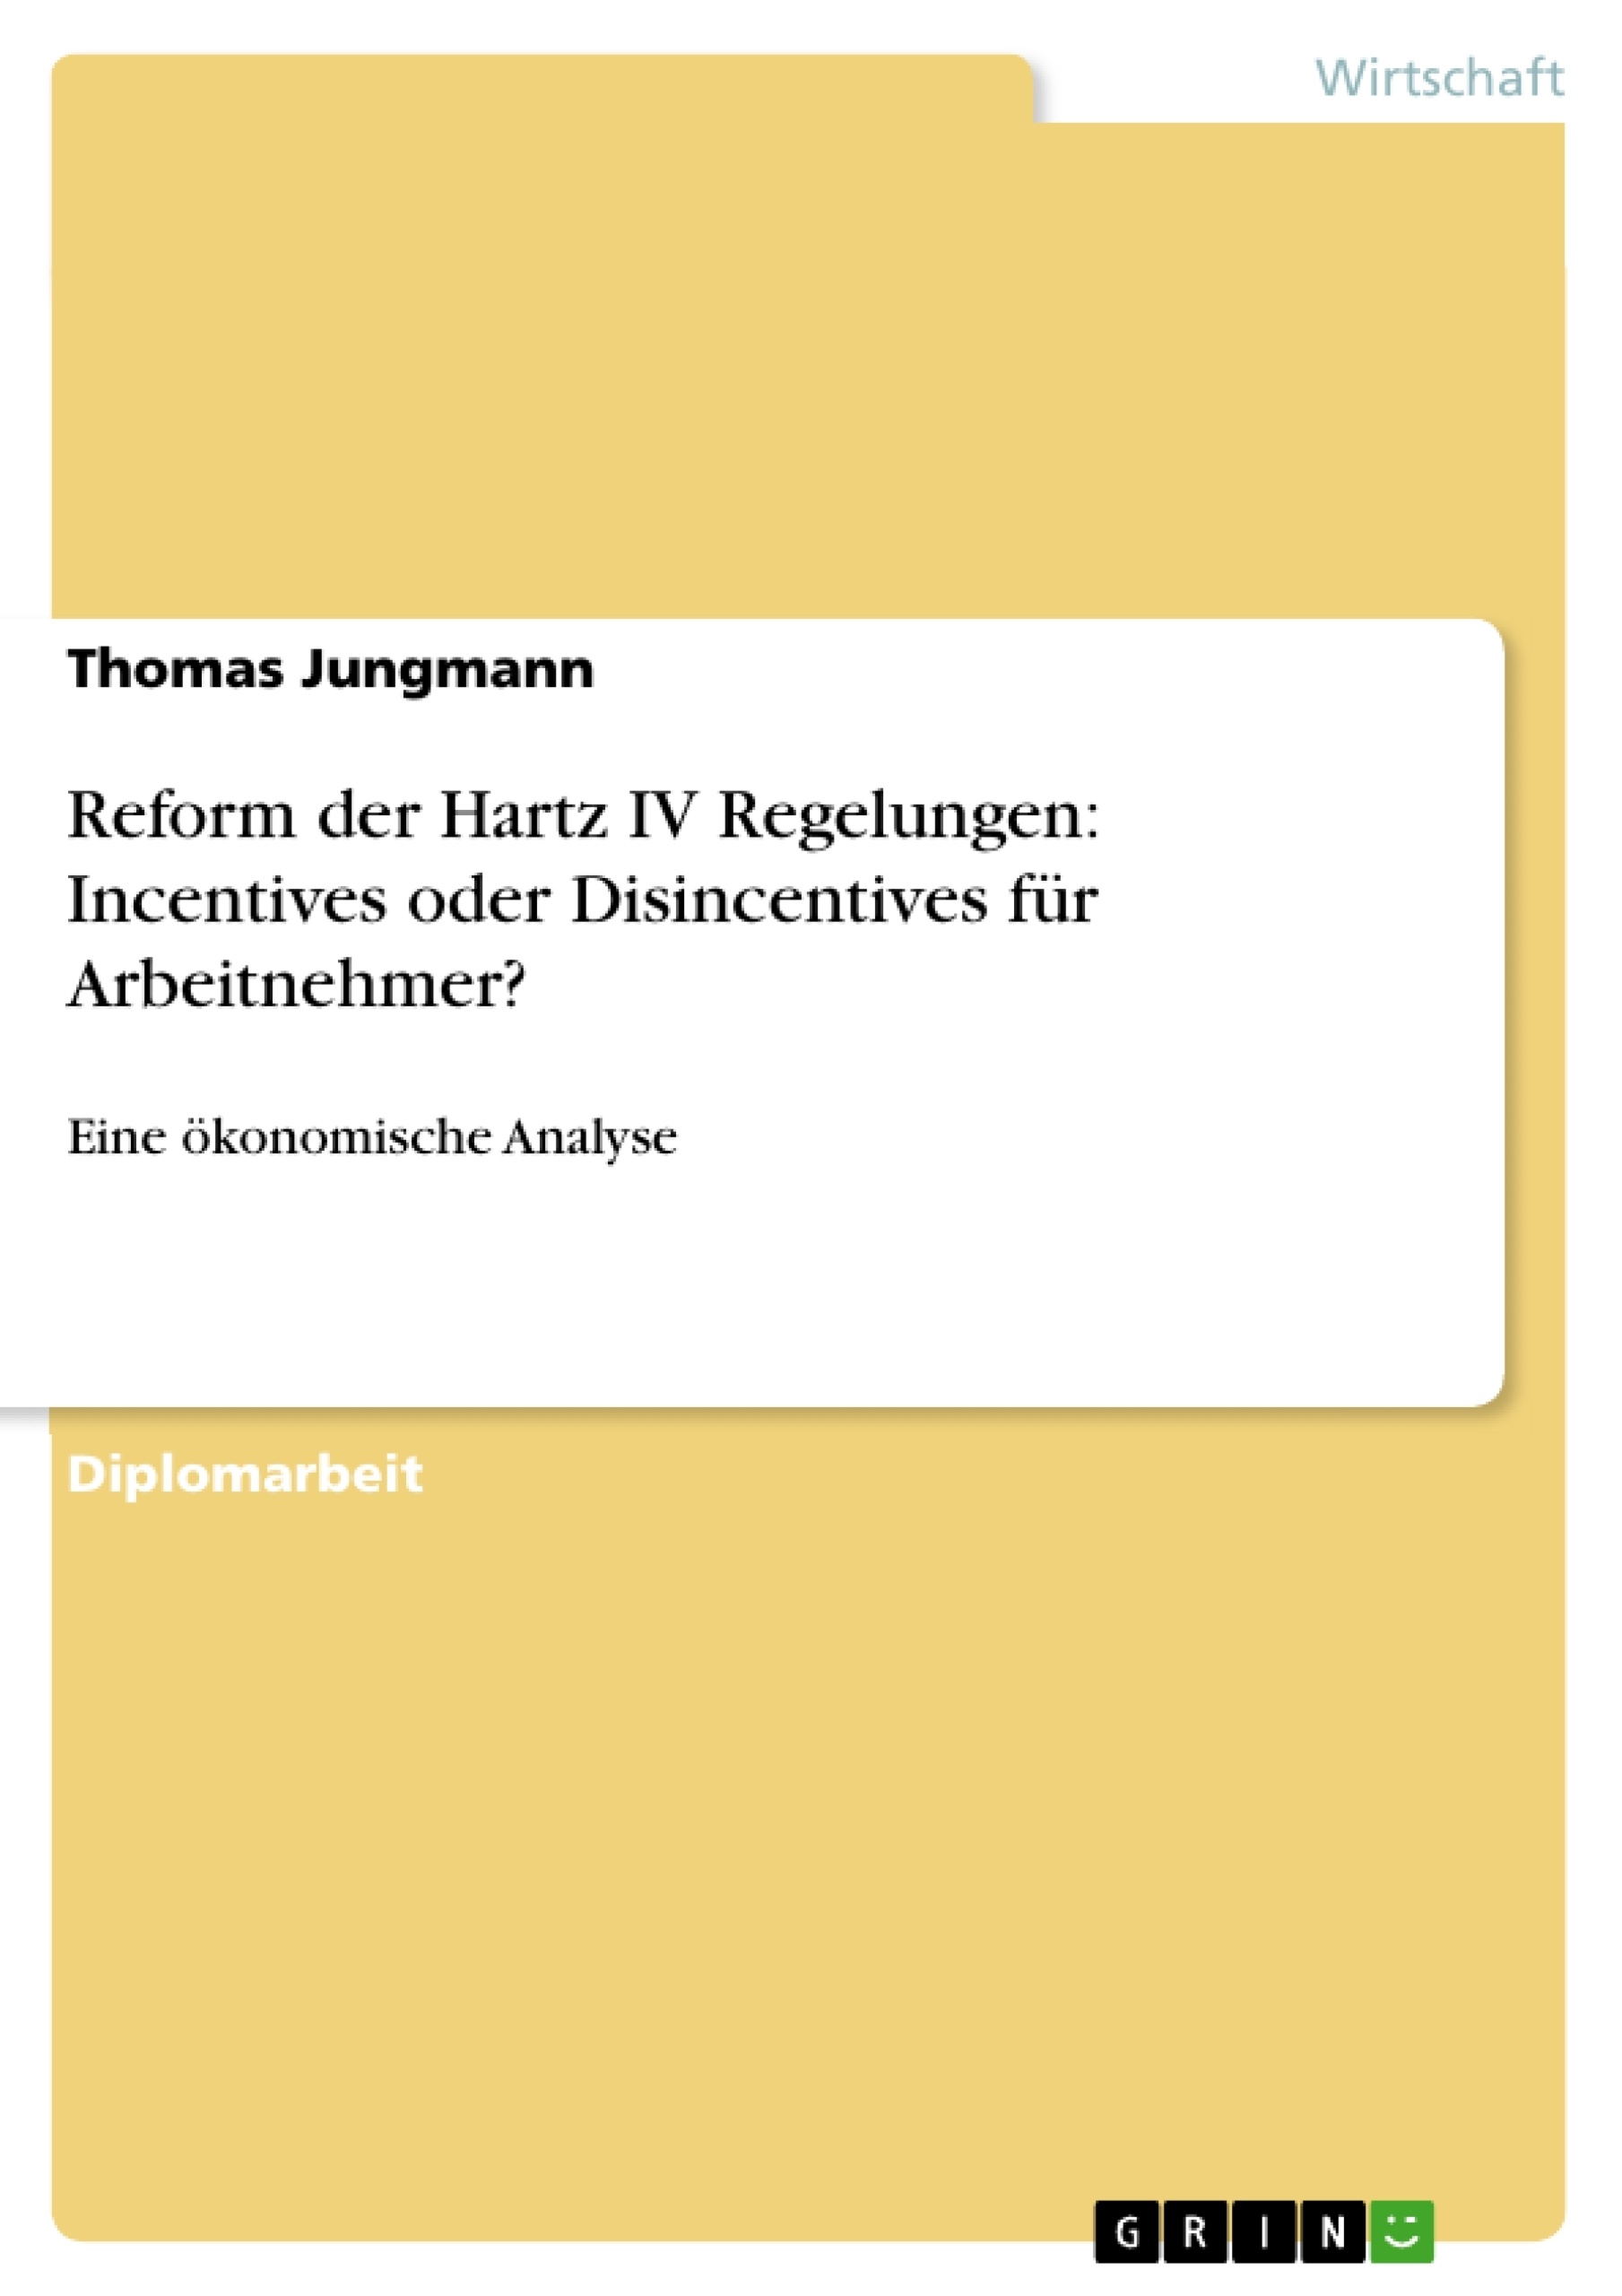 Title: Reform der Hartz IV Regelungen: Incentives oder Disincentives für Arbeitnehmer? 